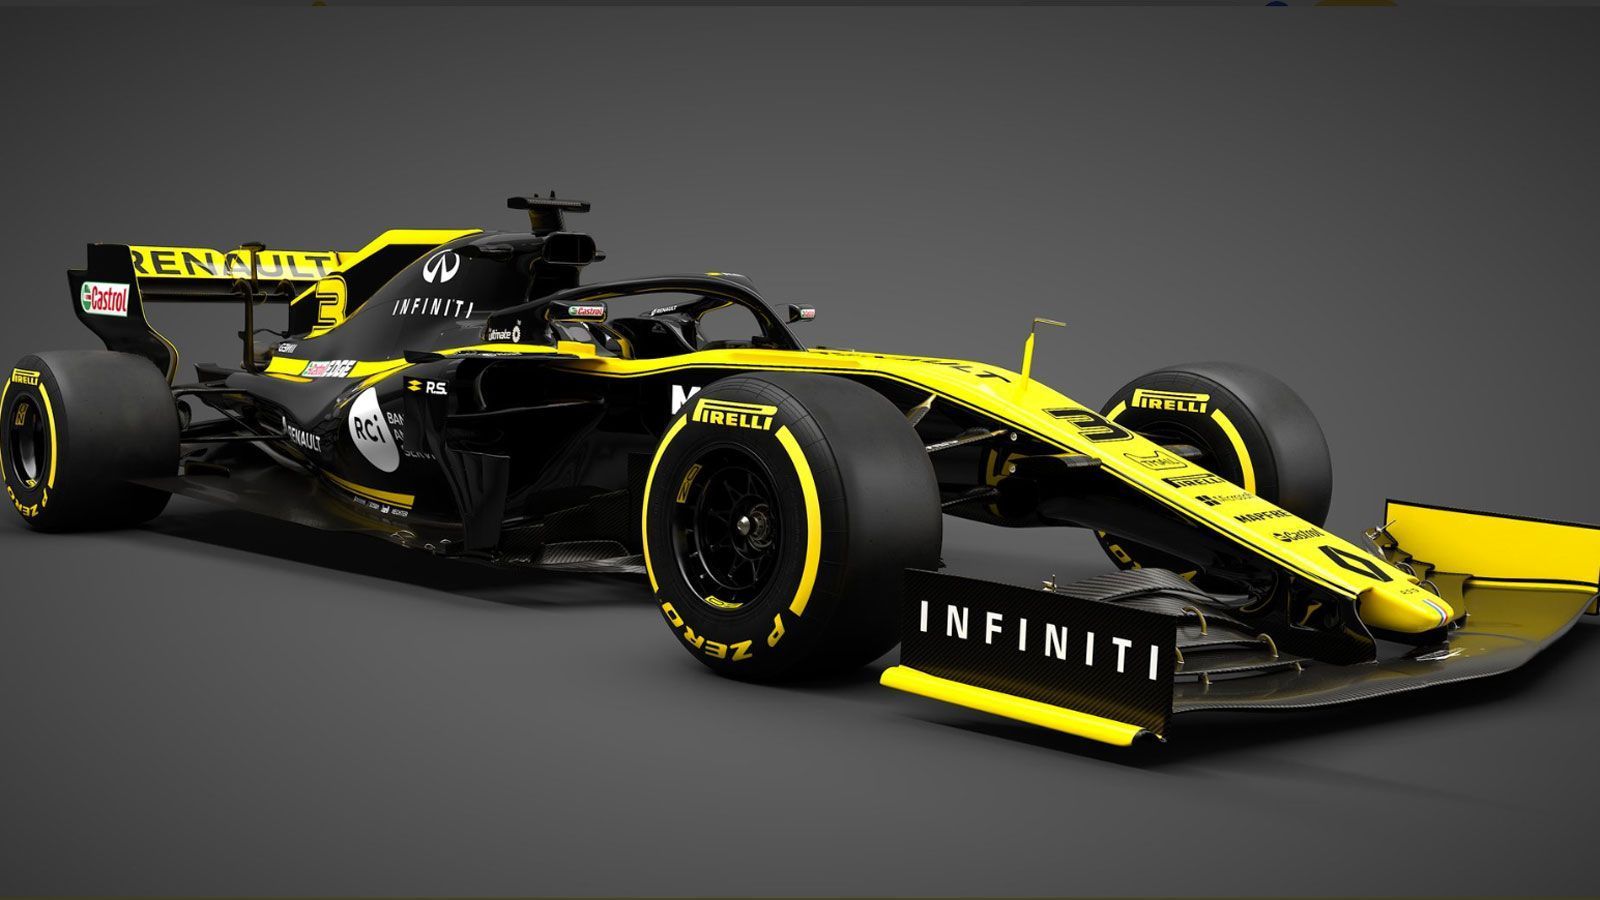 
                <strong>Formel-1-Autos 2019: Renault F1 Team</strong><br>
                Mit diesem Rennwagen soll es für Renault weiter bergauf gehen. Nach den Plätzen neun, sechs und vier in der Konstrukteurswertung peilen die Franzosen in diesem Jahr den Angriff auf die großen Drei an. Dabei wirkt der 2019er Bolide vom Design her wie eine Kopie des Vorjahresmodells.
              